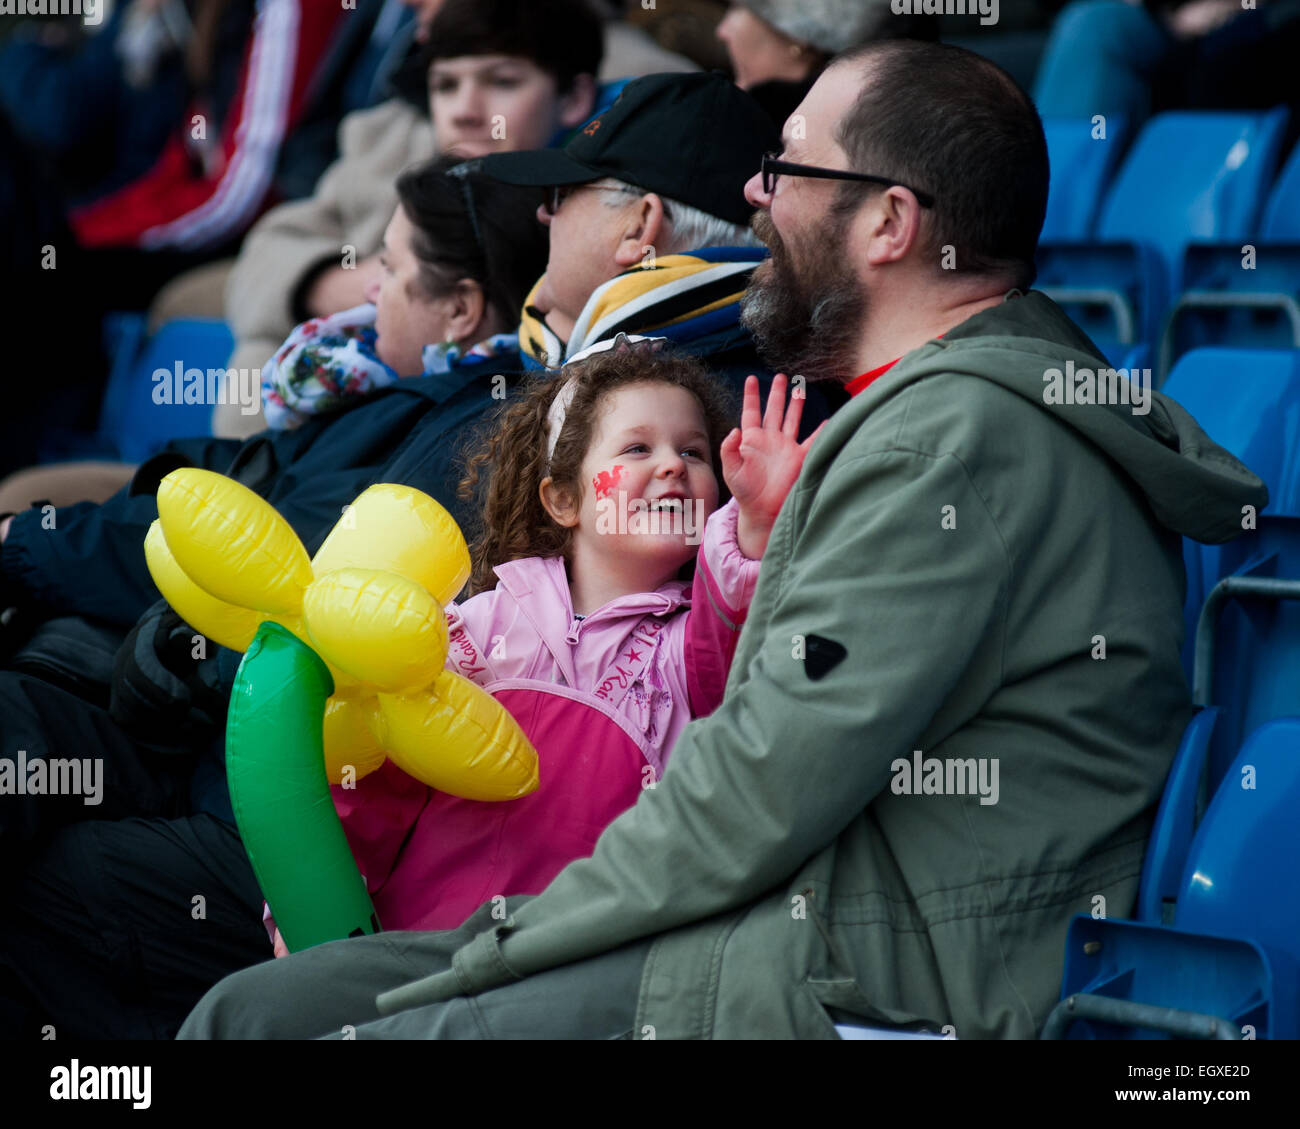 Pix de supporters gallois au London Welsh v London Irish Aviva Premiership Rugby match à St Davids Day (1 mars 2015) Banque D'Images